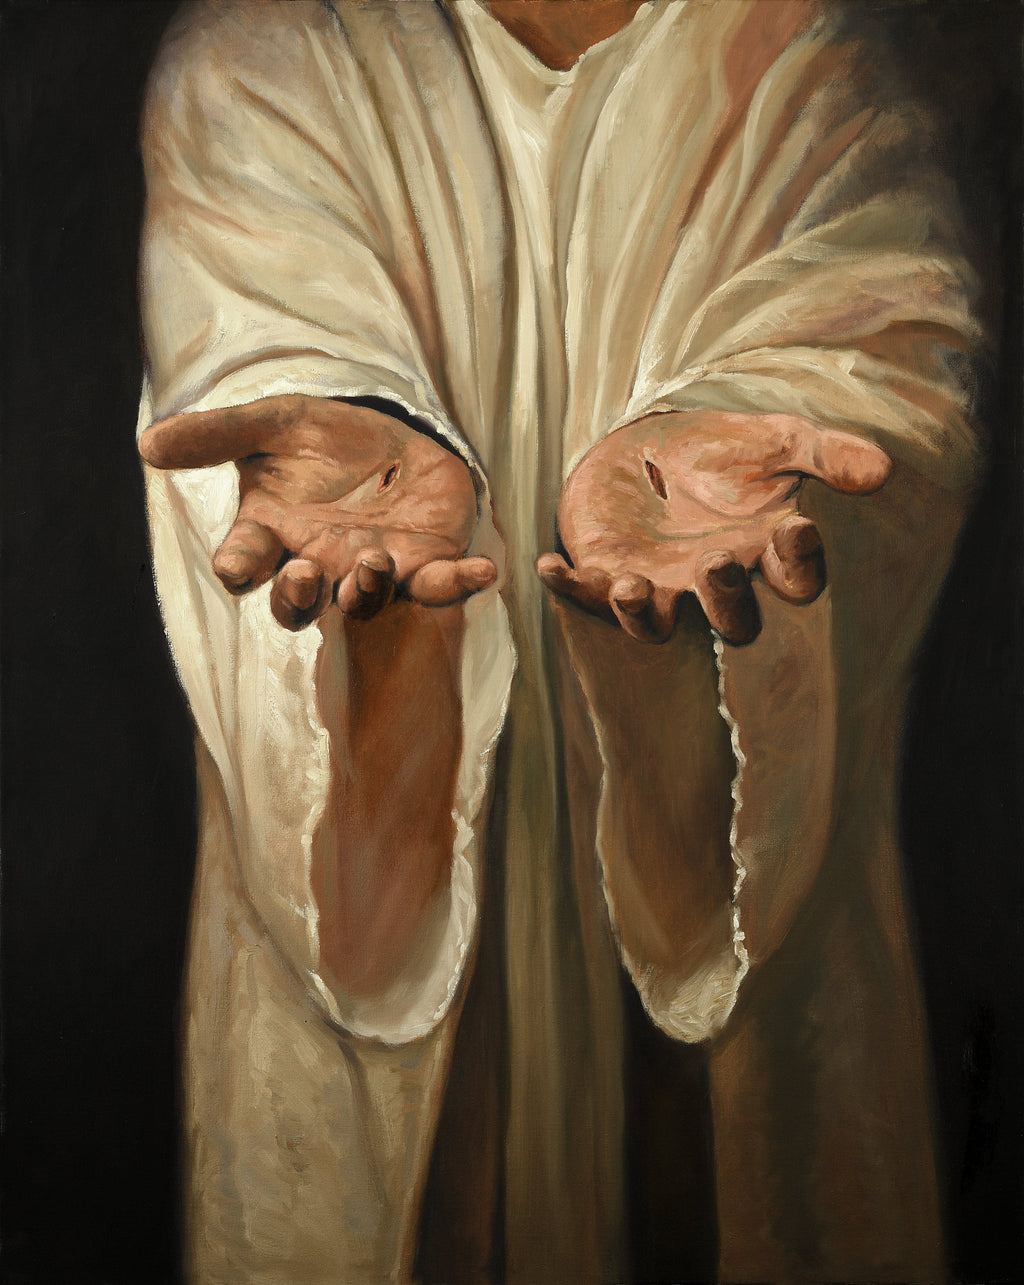 Framed 1 Panel - Hands of Jesus